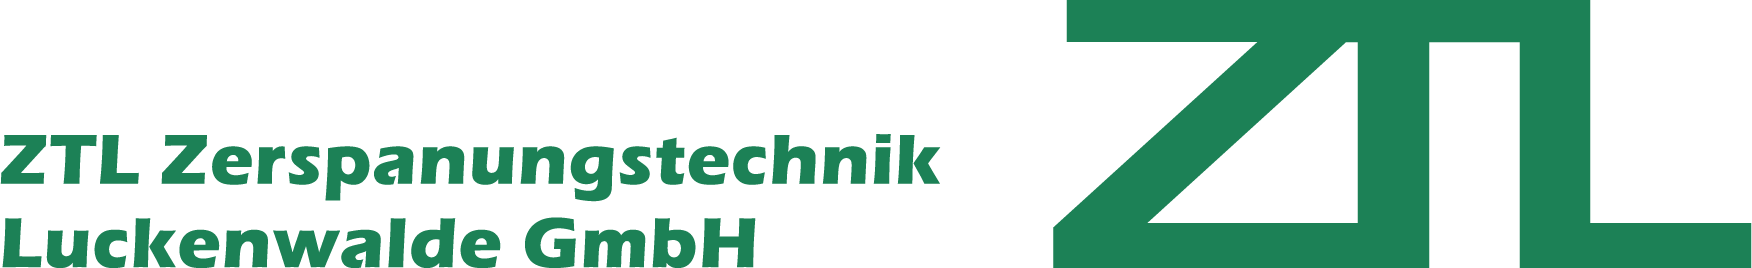 ZTL Zerspanungstechnik Luckenwalde GmbH